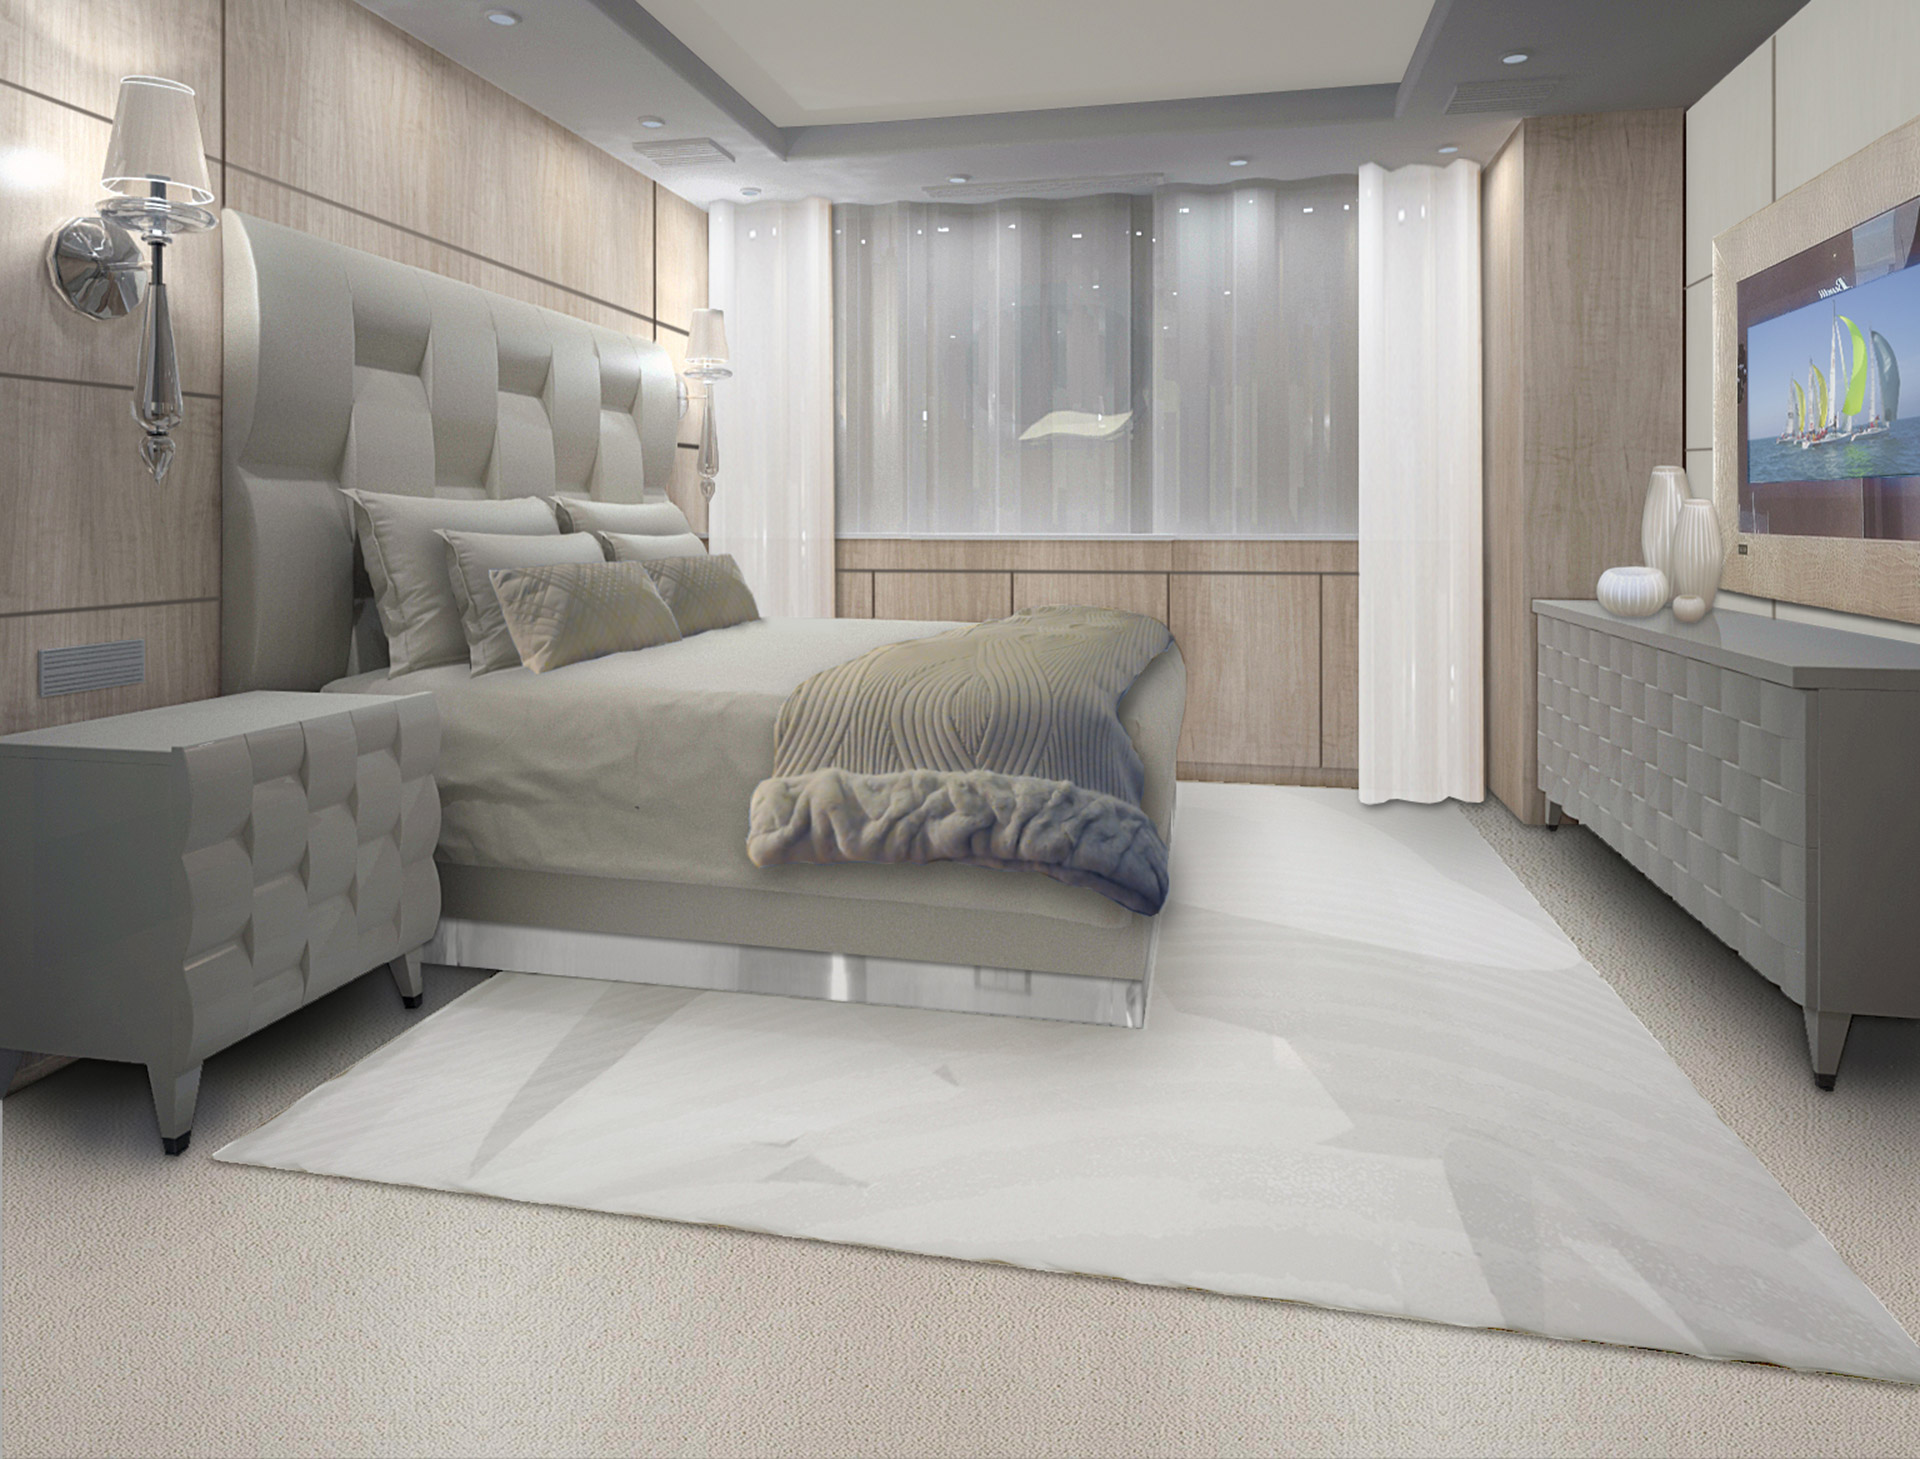 Master Room d’un voilier par l’agence Borella Art Design